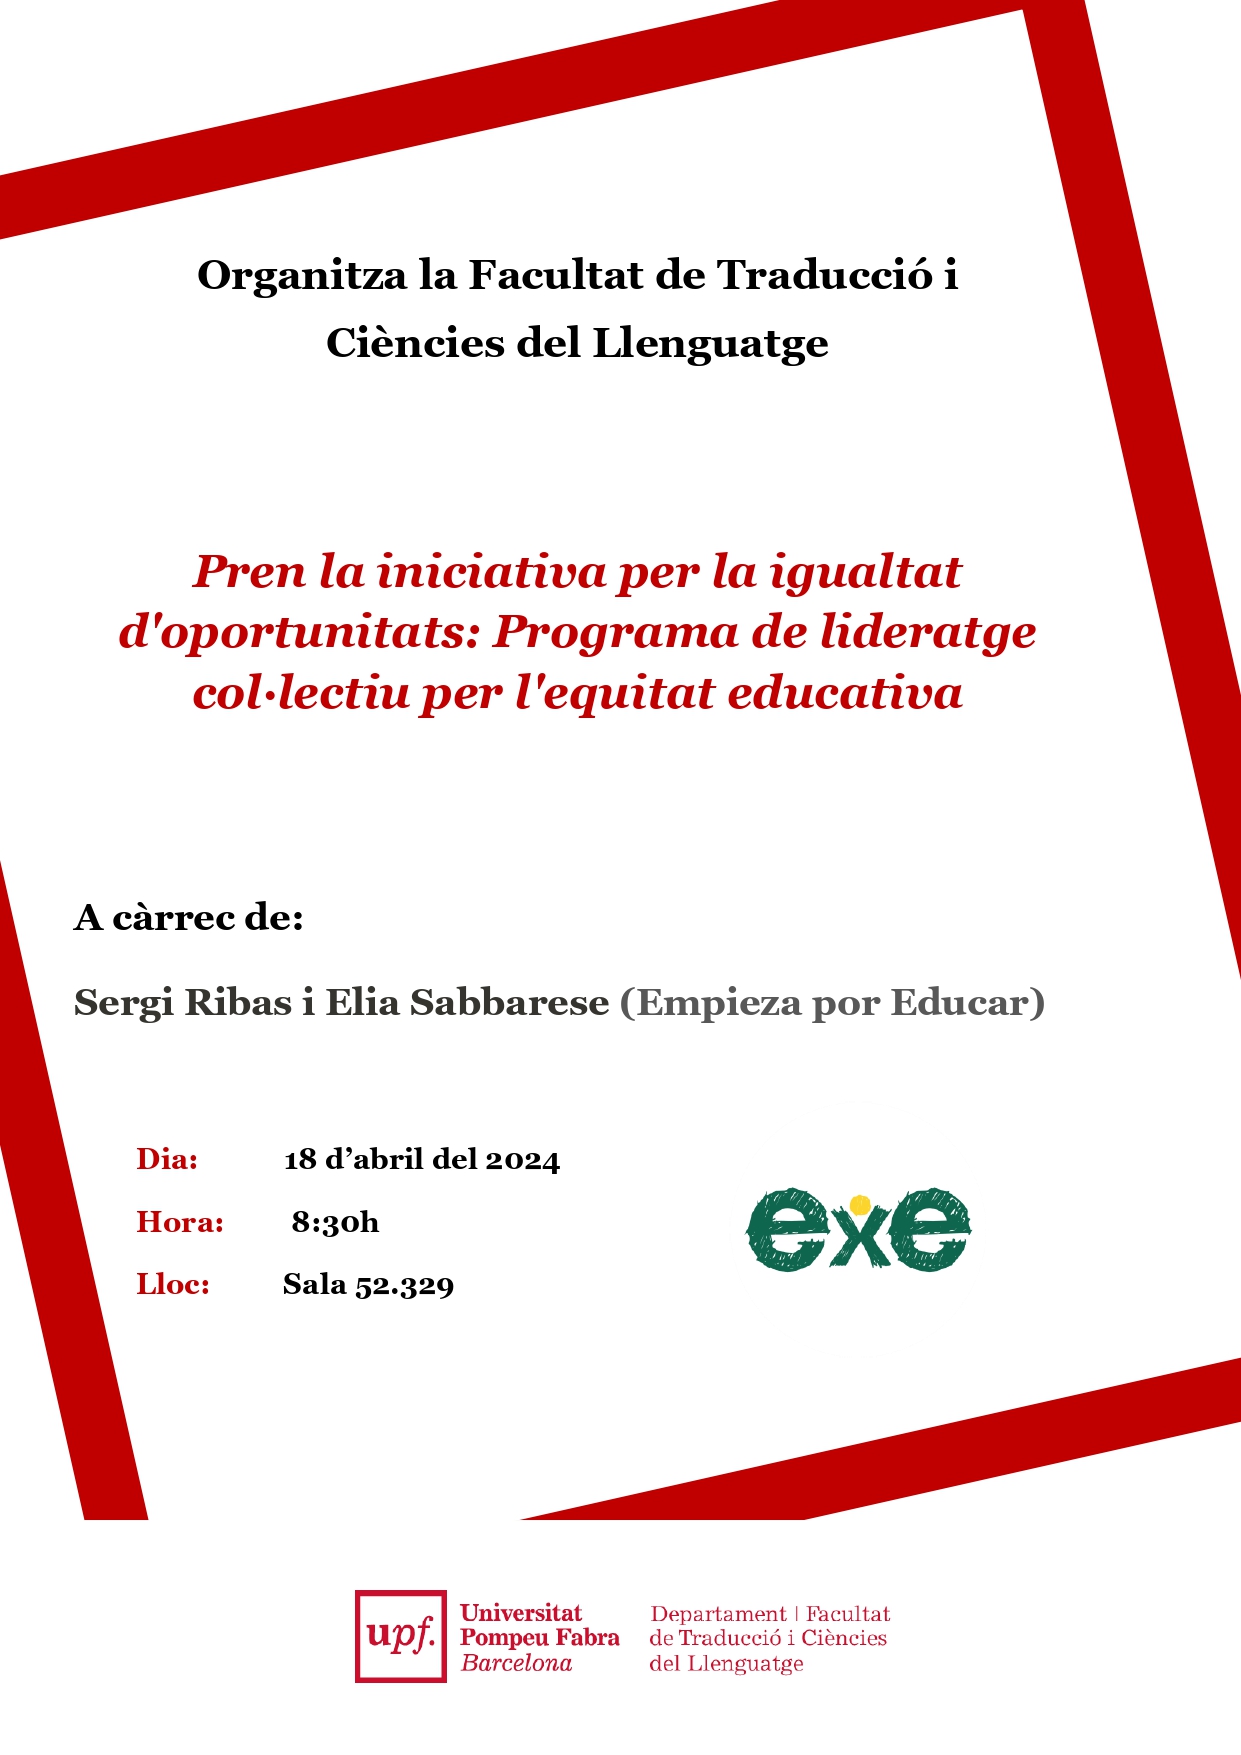 18/04/2024 Xerrada de la Facultat de Traducció, a càrrec de Sergi Ribas i Elia Sabbarese (Empieza por Educar)